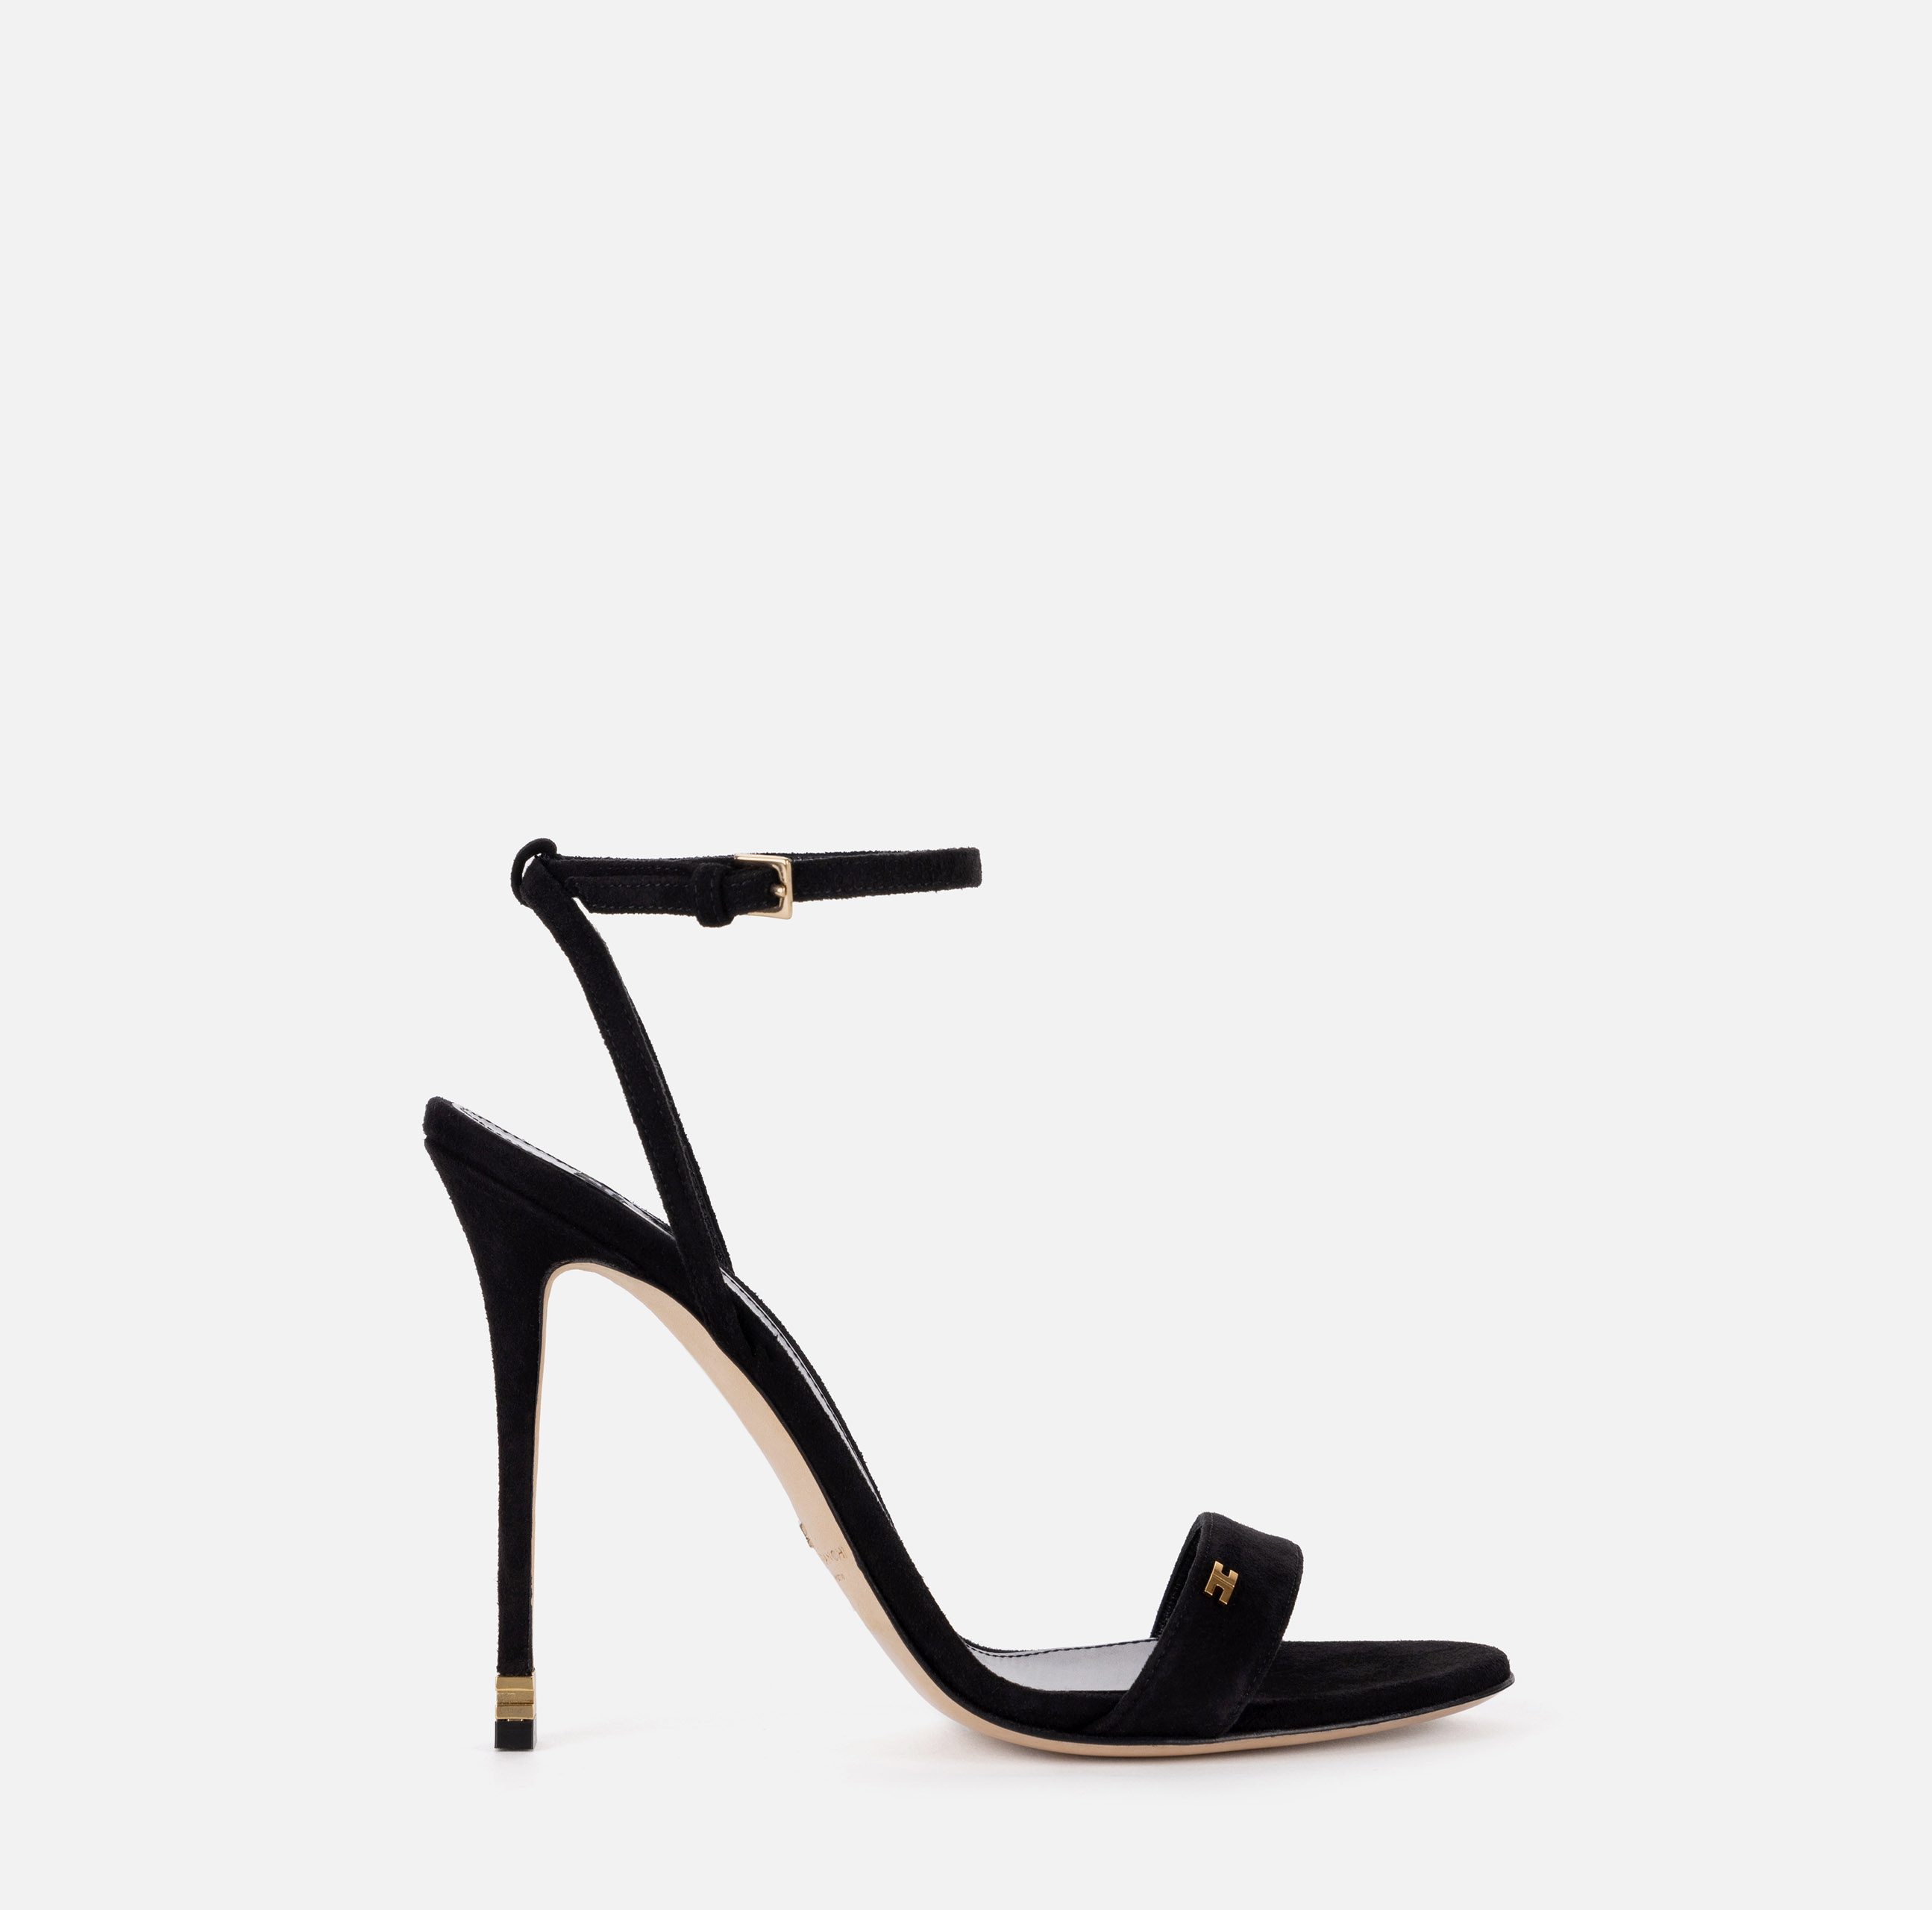 Sandal with ankle strap Étoile - SCARPE - Elisabetta Franchi